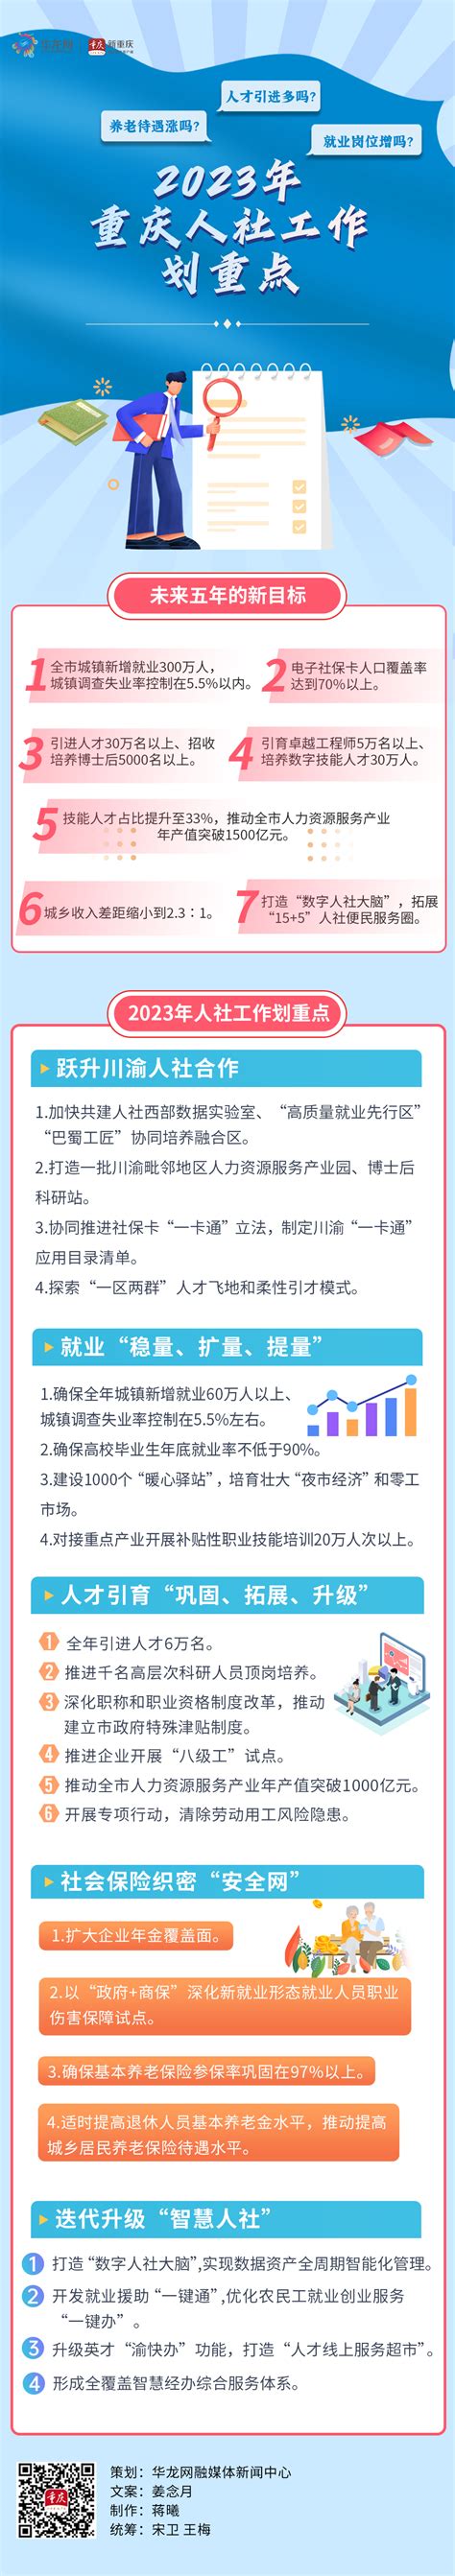 2020“蓉漂人才荟”首场活动在重庆大学举行 - 重庆日报网